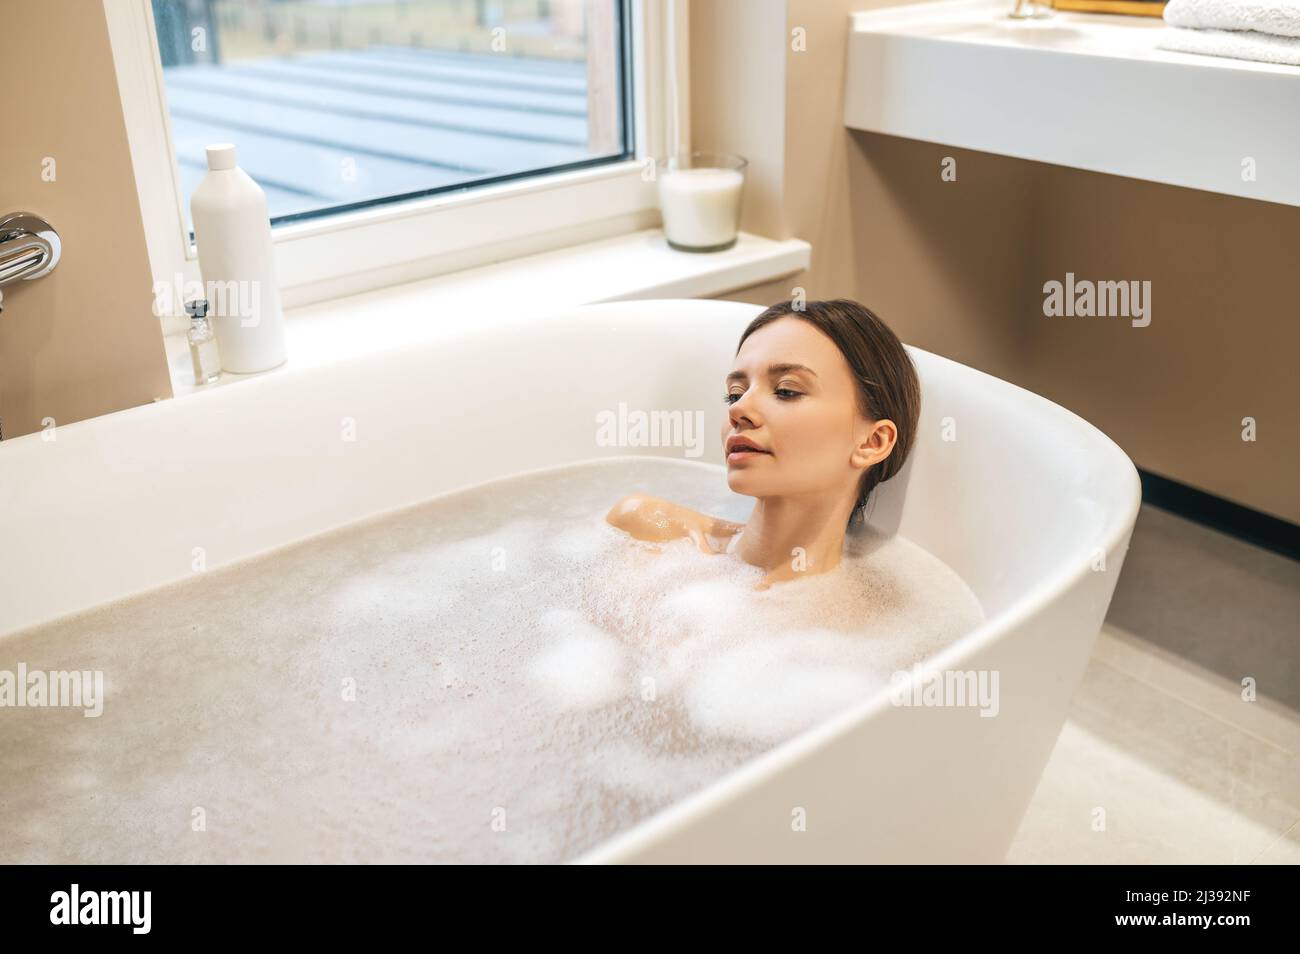 Jolie dame prenant un bain relaxant à la maison Banque D'Images